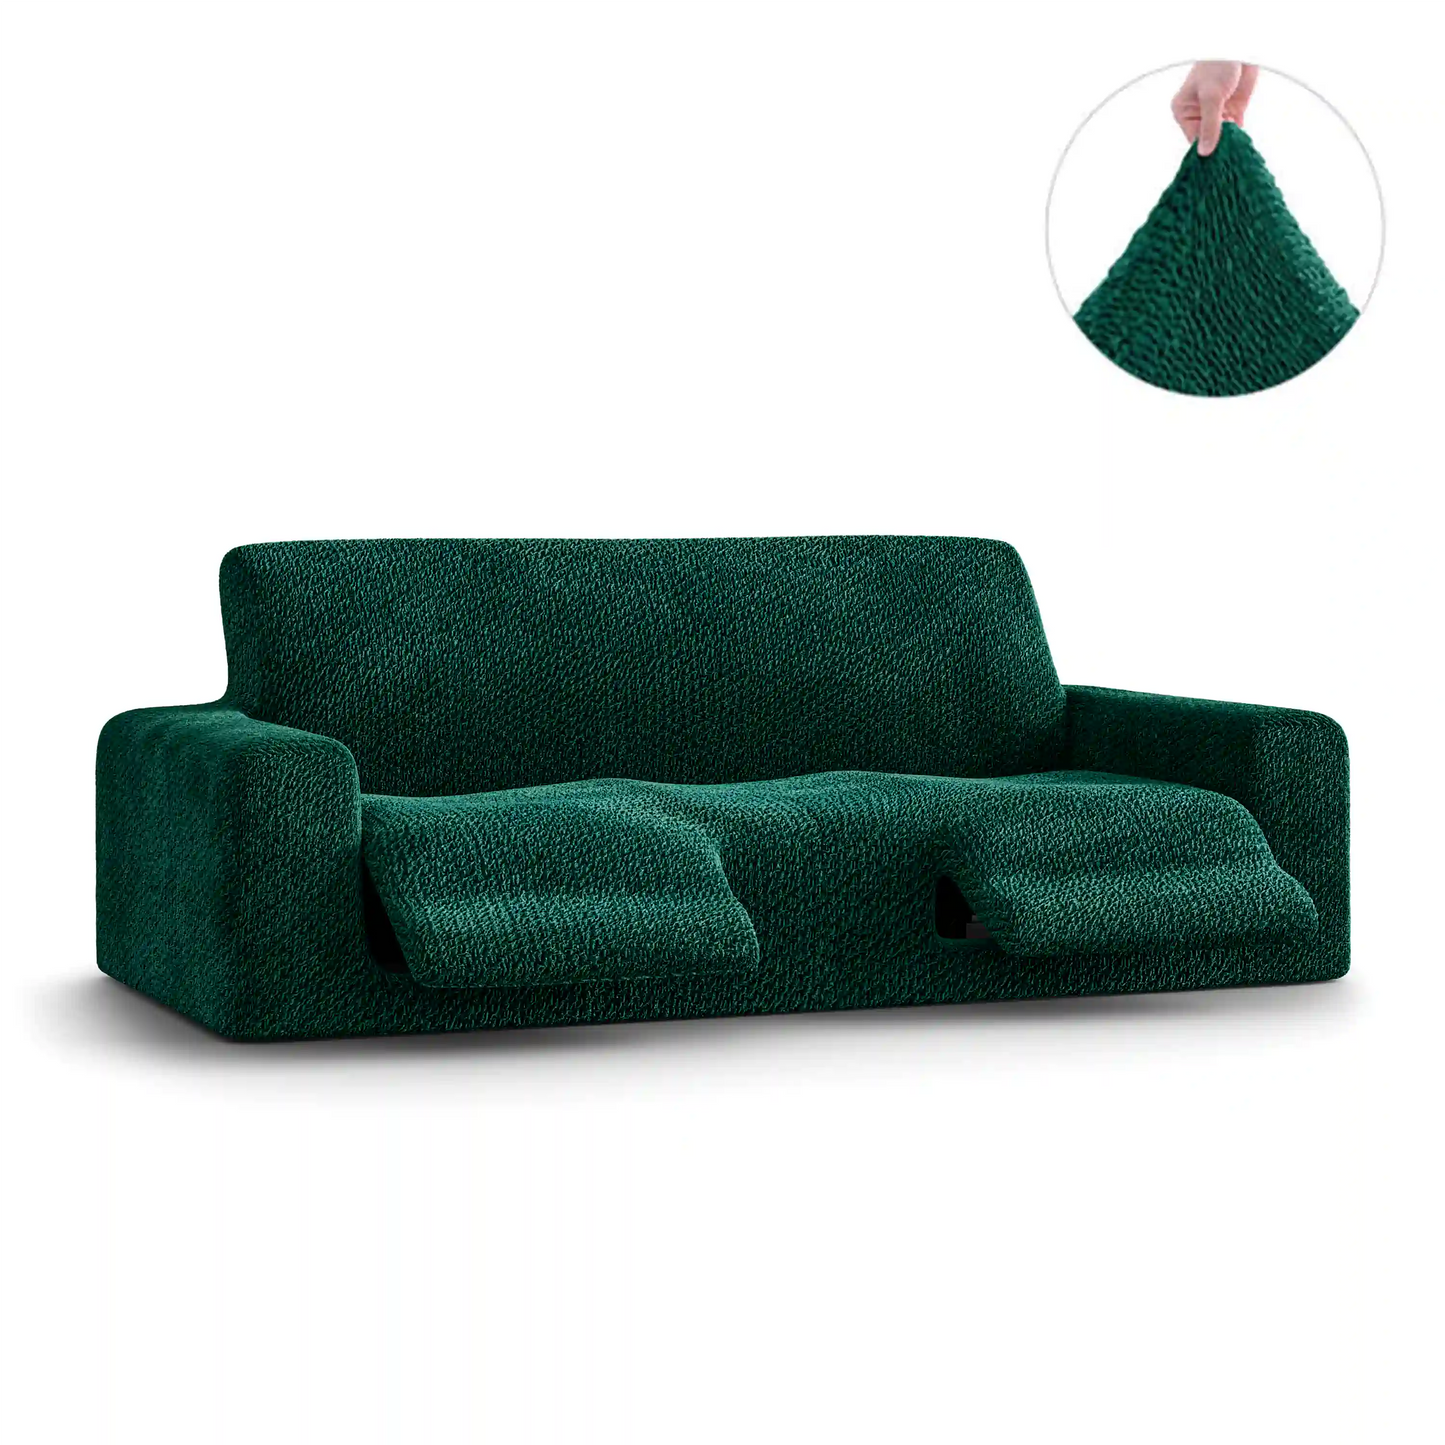 3 Seater Recliner Sofa Cover - Green, Velvet